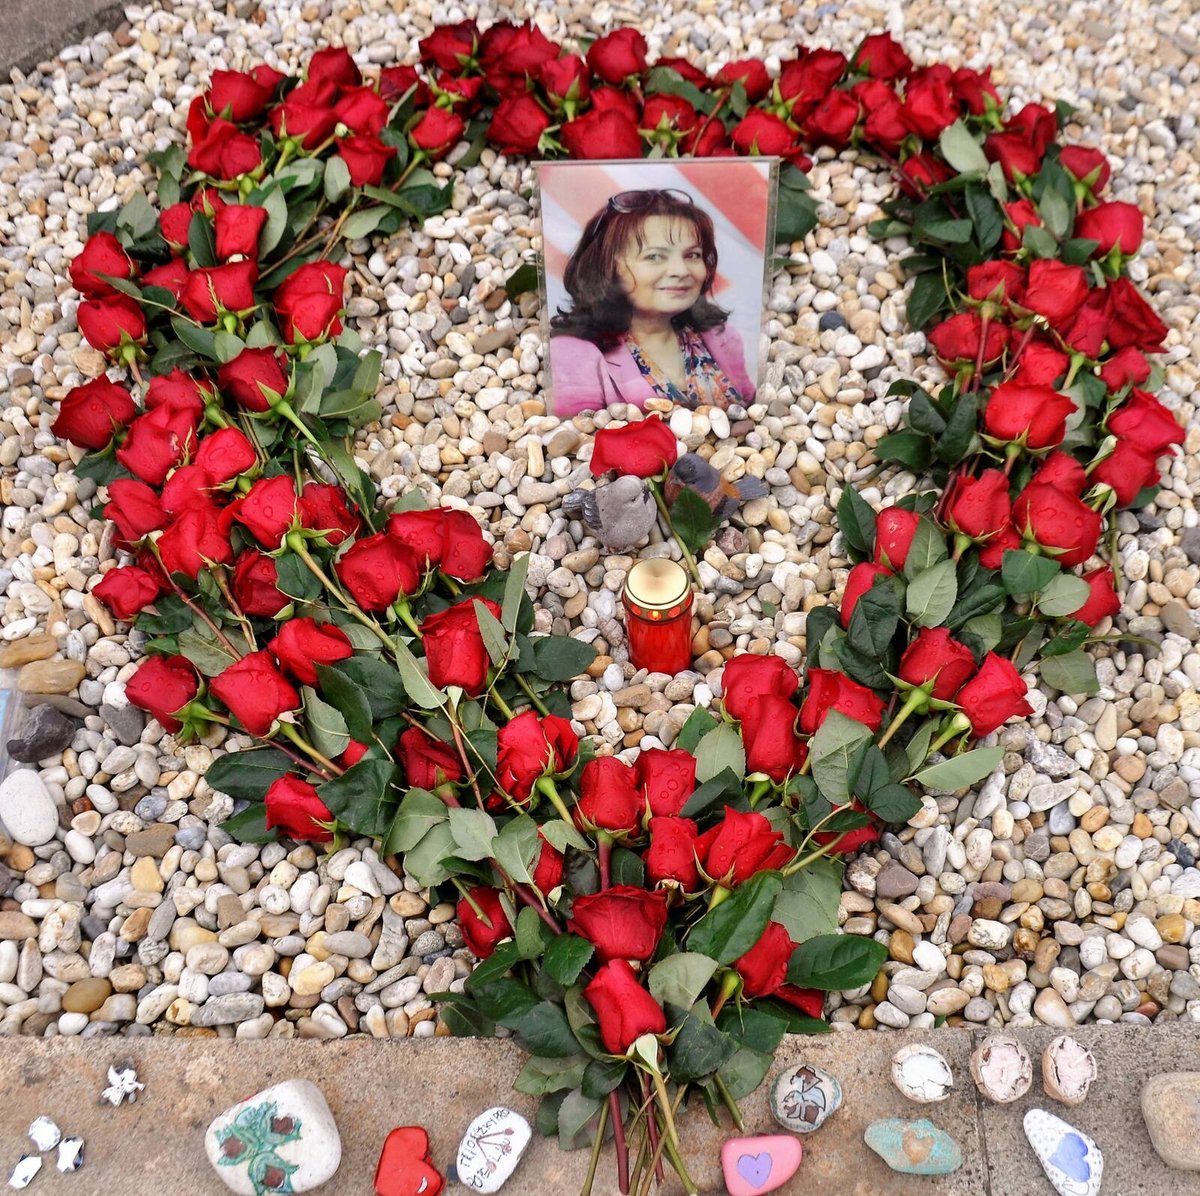 Nádherné překvapení na hrobě Popelky. Věnec z rudých růží ve tvaru srdce. Včera to byl rok, co milovaná herečka zemřela. Lidé nezapomínají...